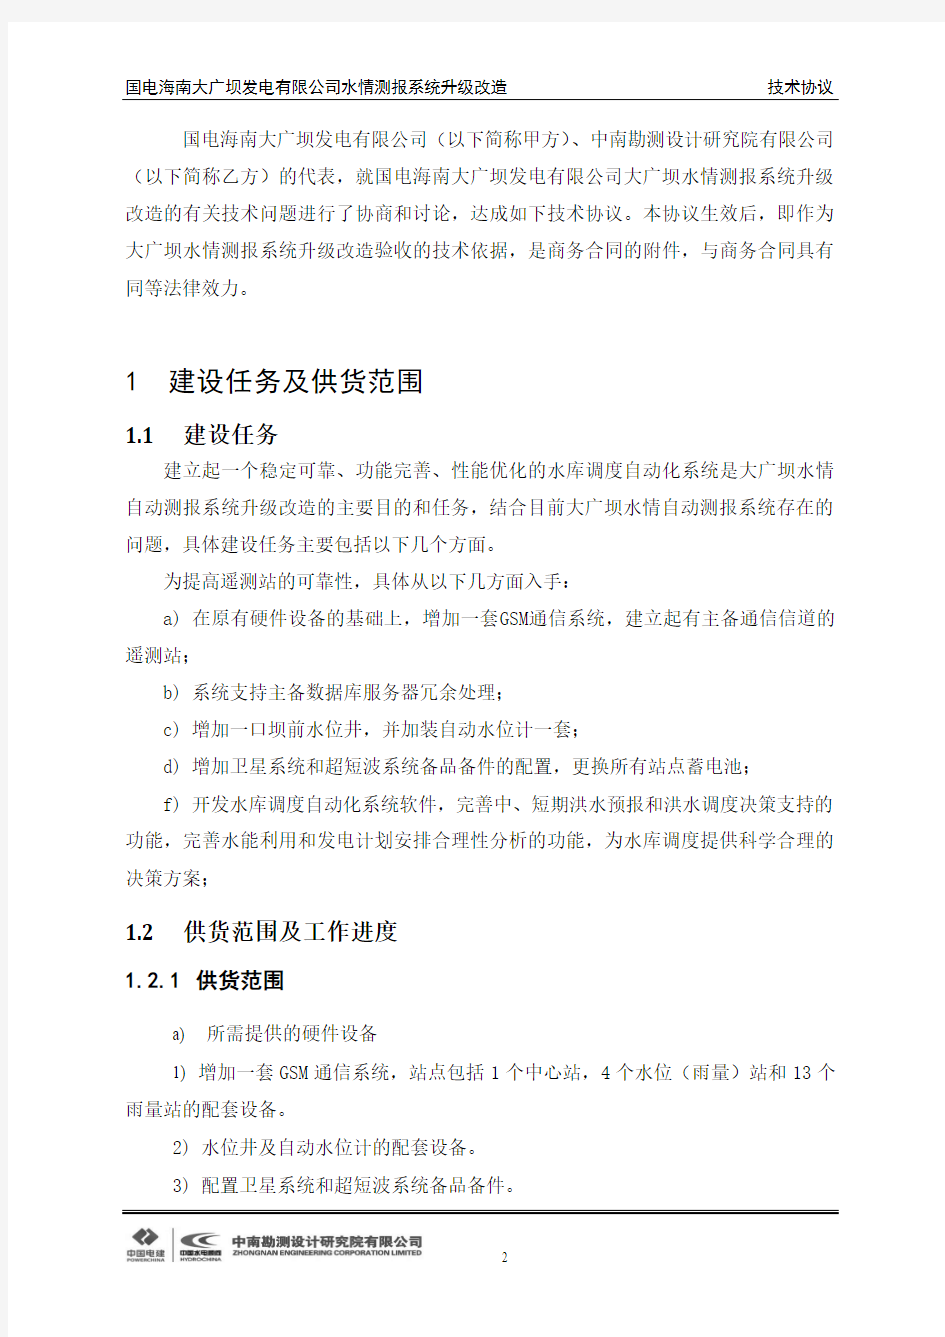 2014-大广坝水情测报系统升级改造技术方案.doc